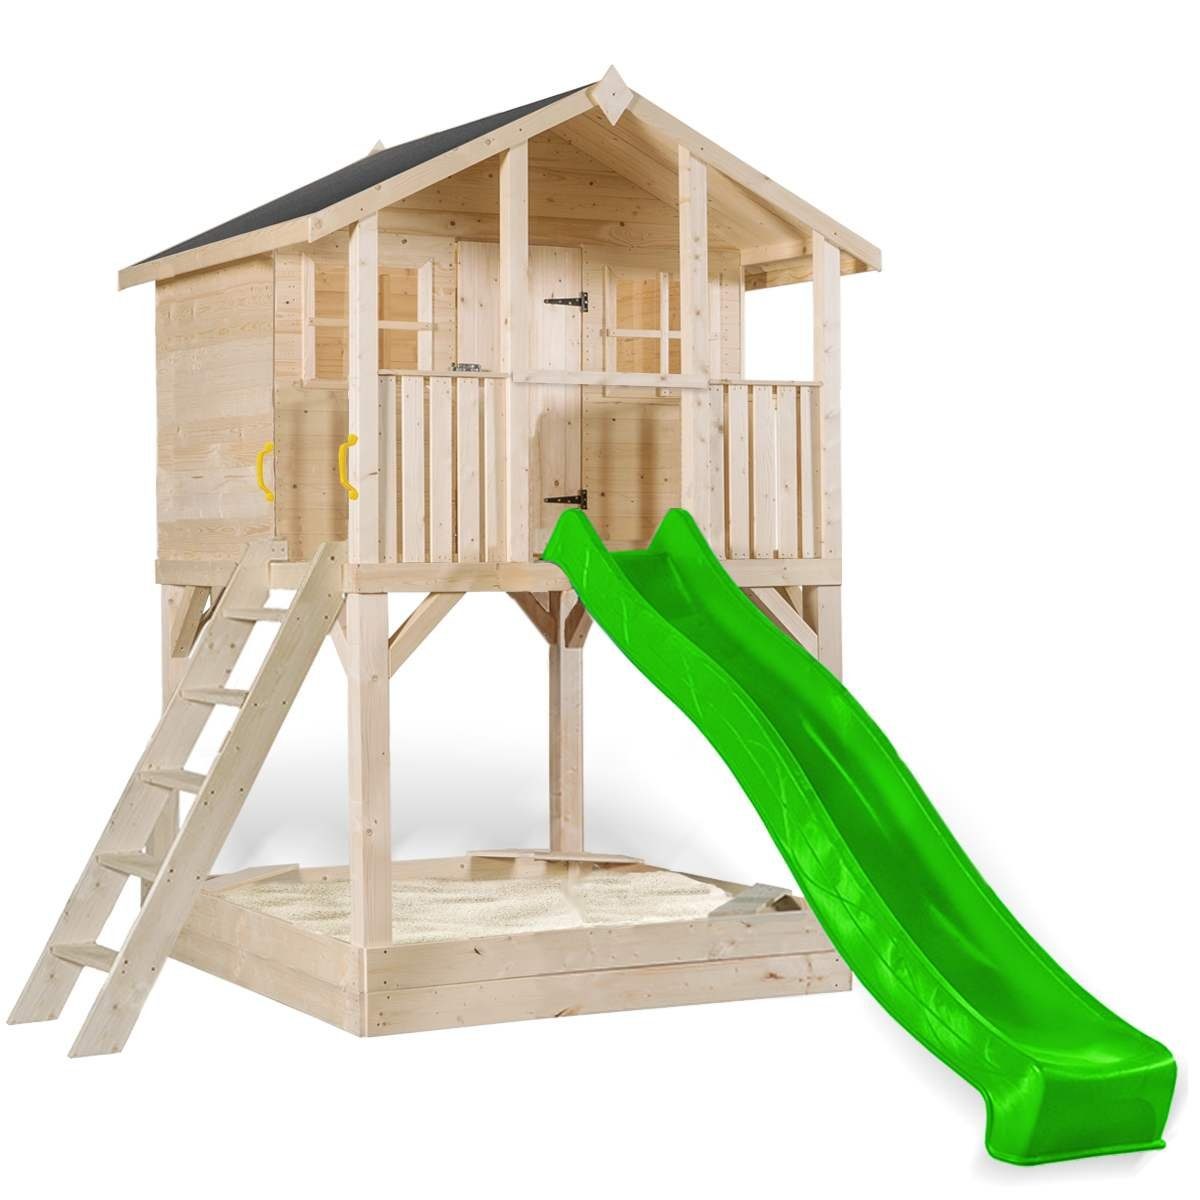 SCHEFFER Outdoor Toys Spielturm Stelzenhaus Tobi Kompakt 510, maximaler  Spielwert durch Klettern, Rutschen, Schaukel etc.